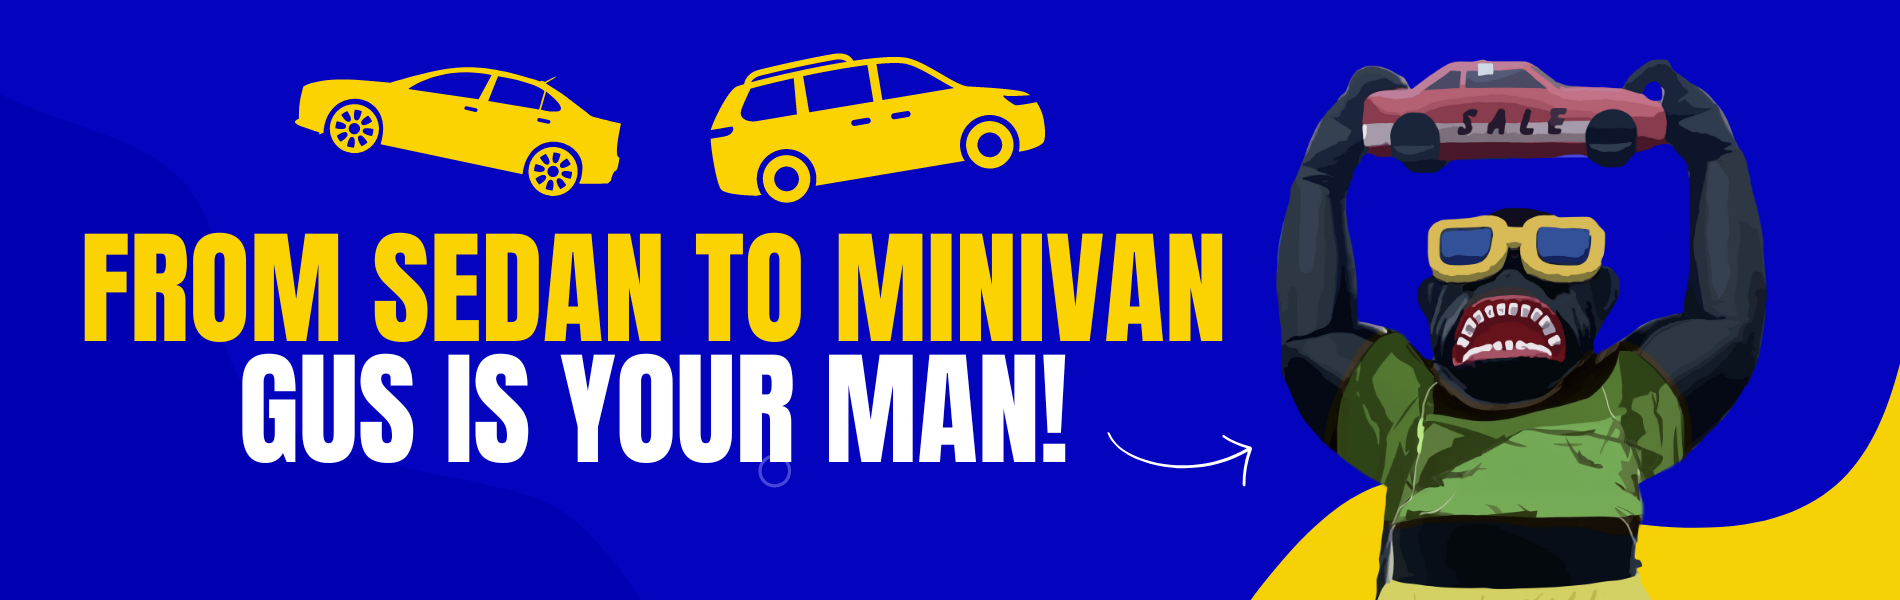 From Sedan to Minivan